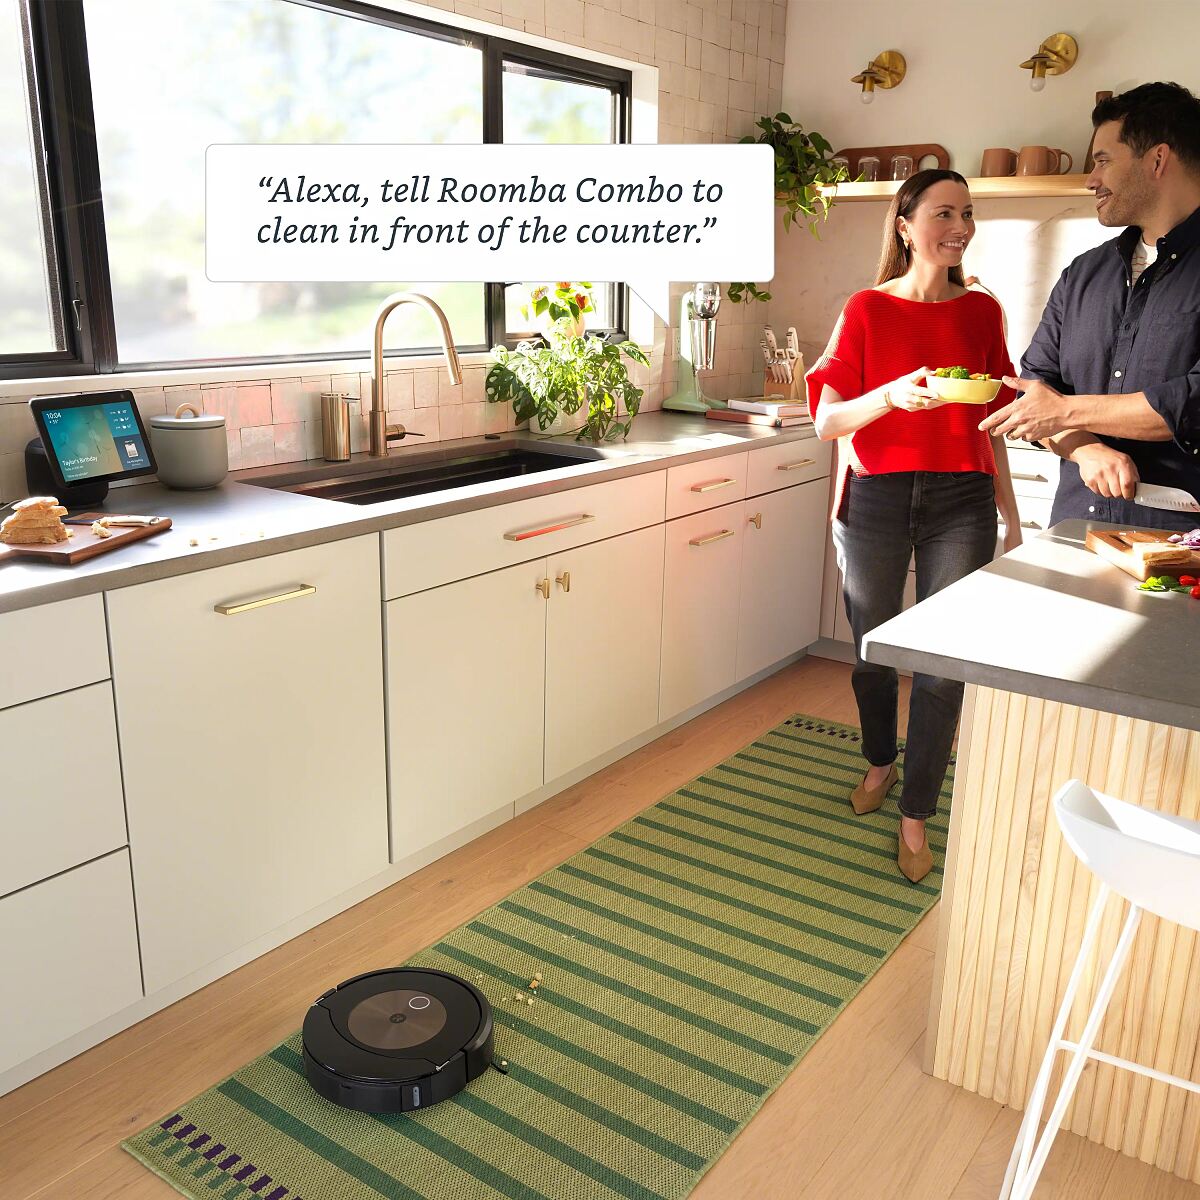 iRobot_RoombaCombo_j9+_Kitchen_Alexa_EUR 1399.-